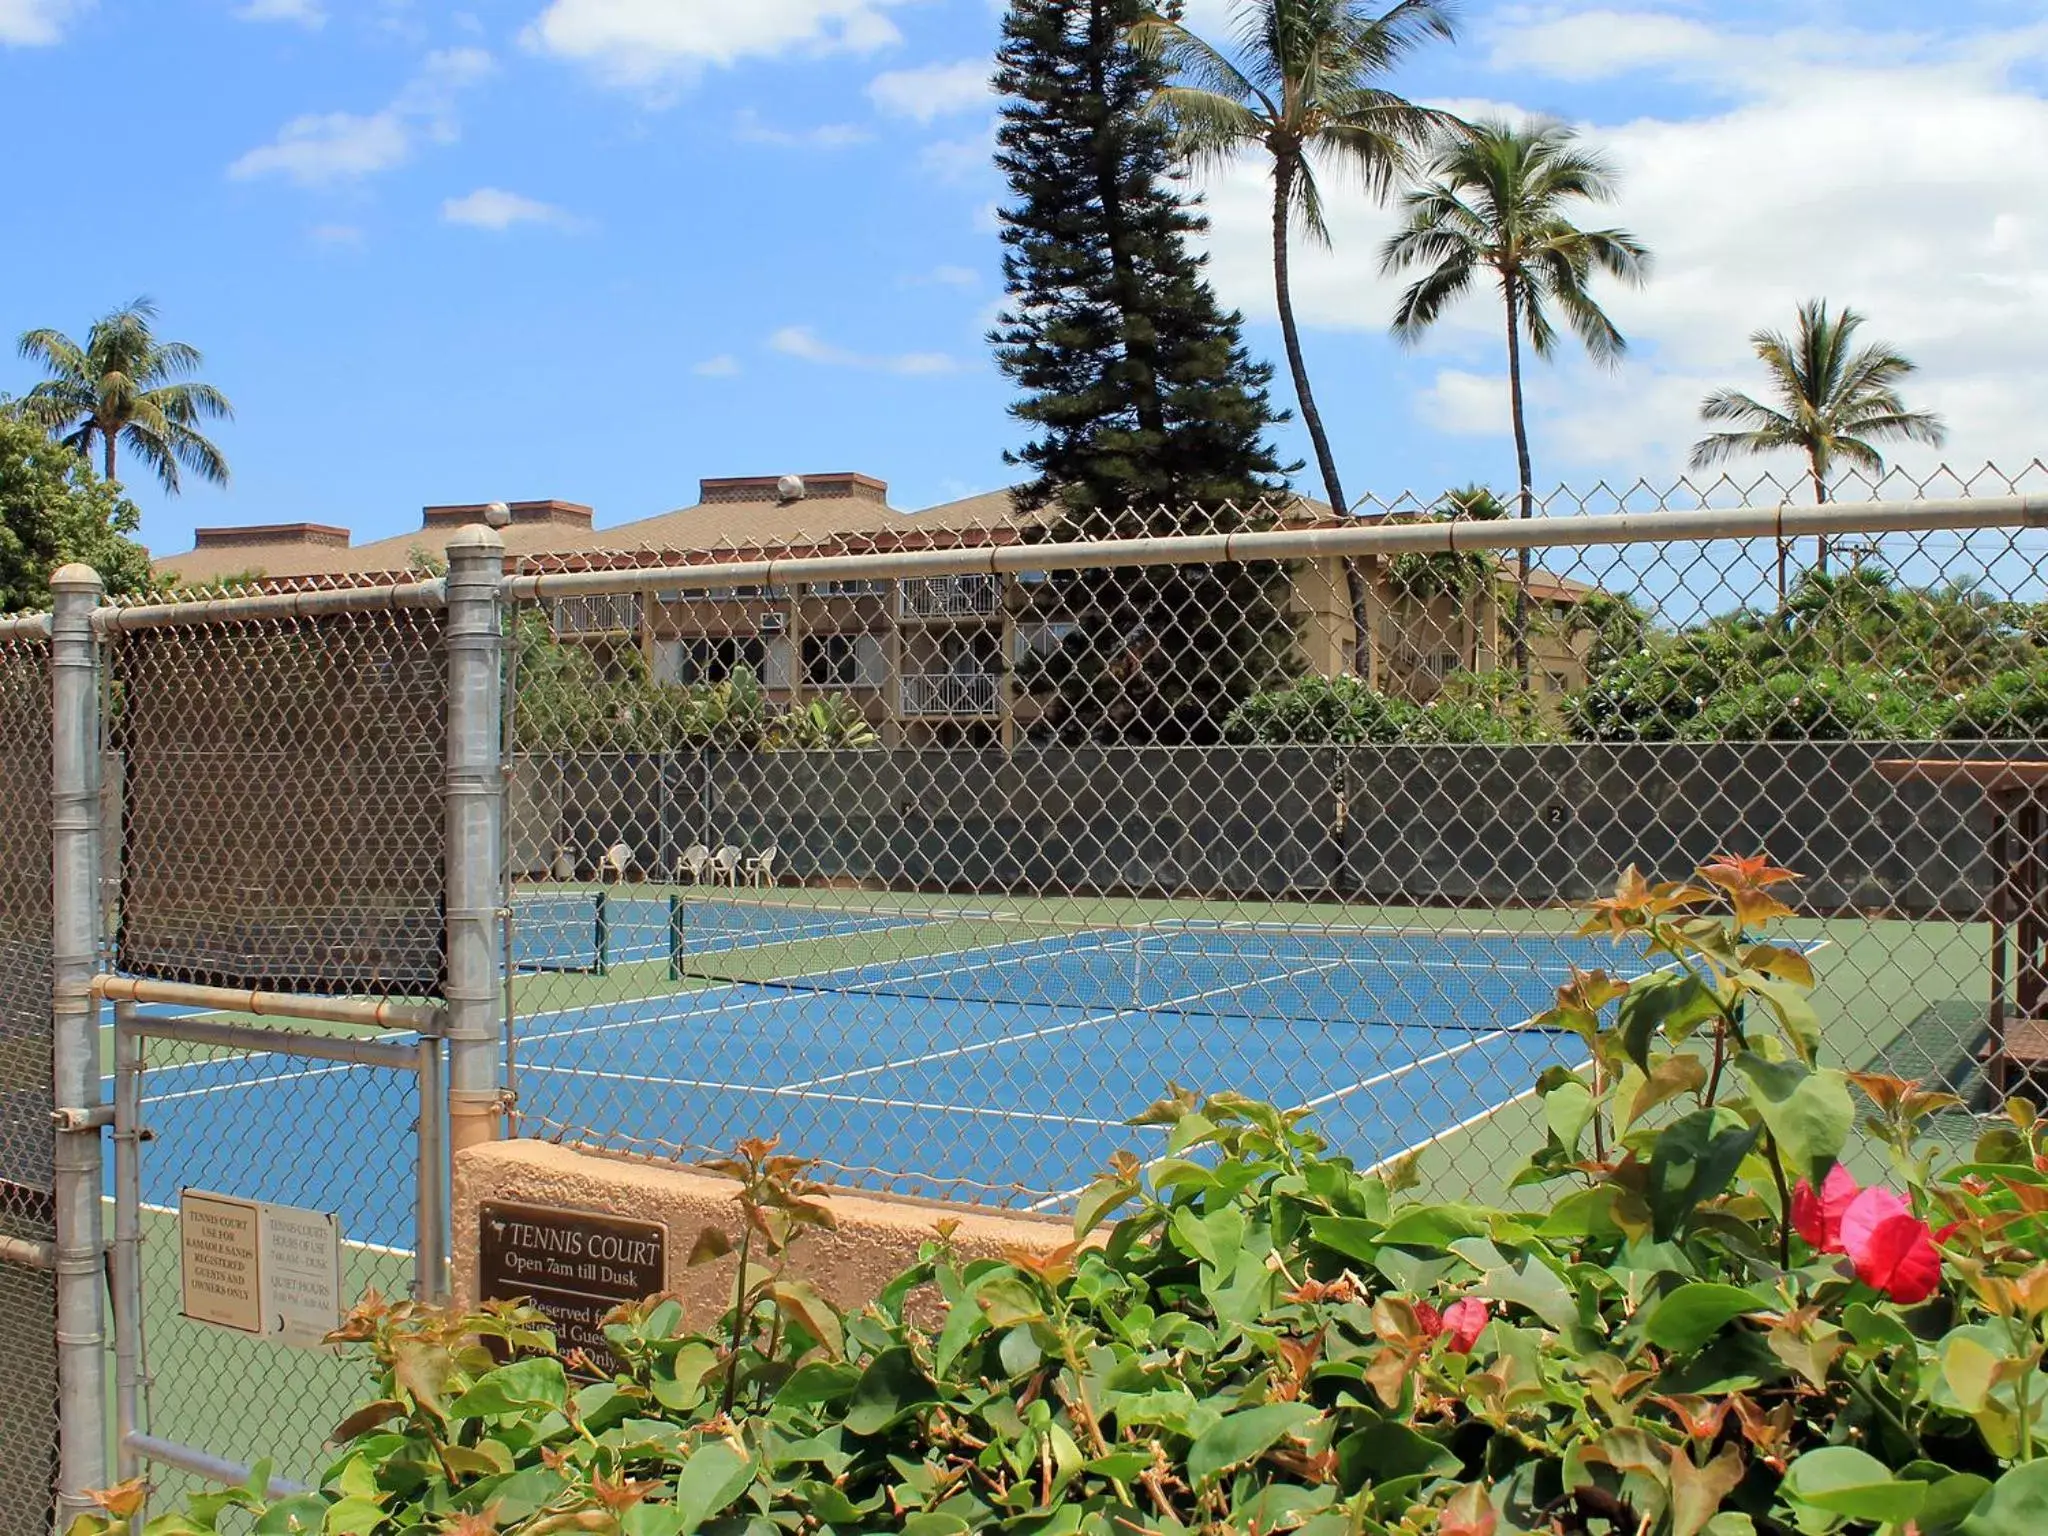 Tennis court, Other Activities in Castle Kamaole Sands